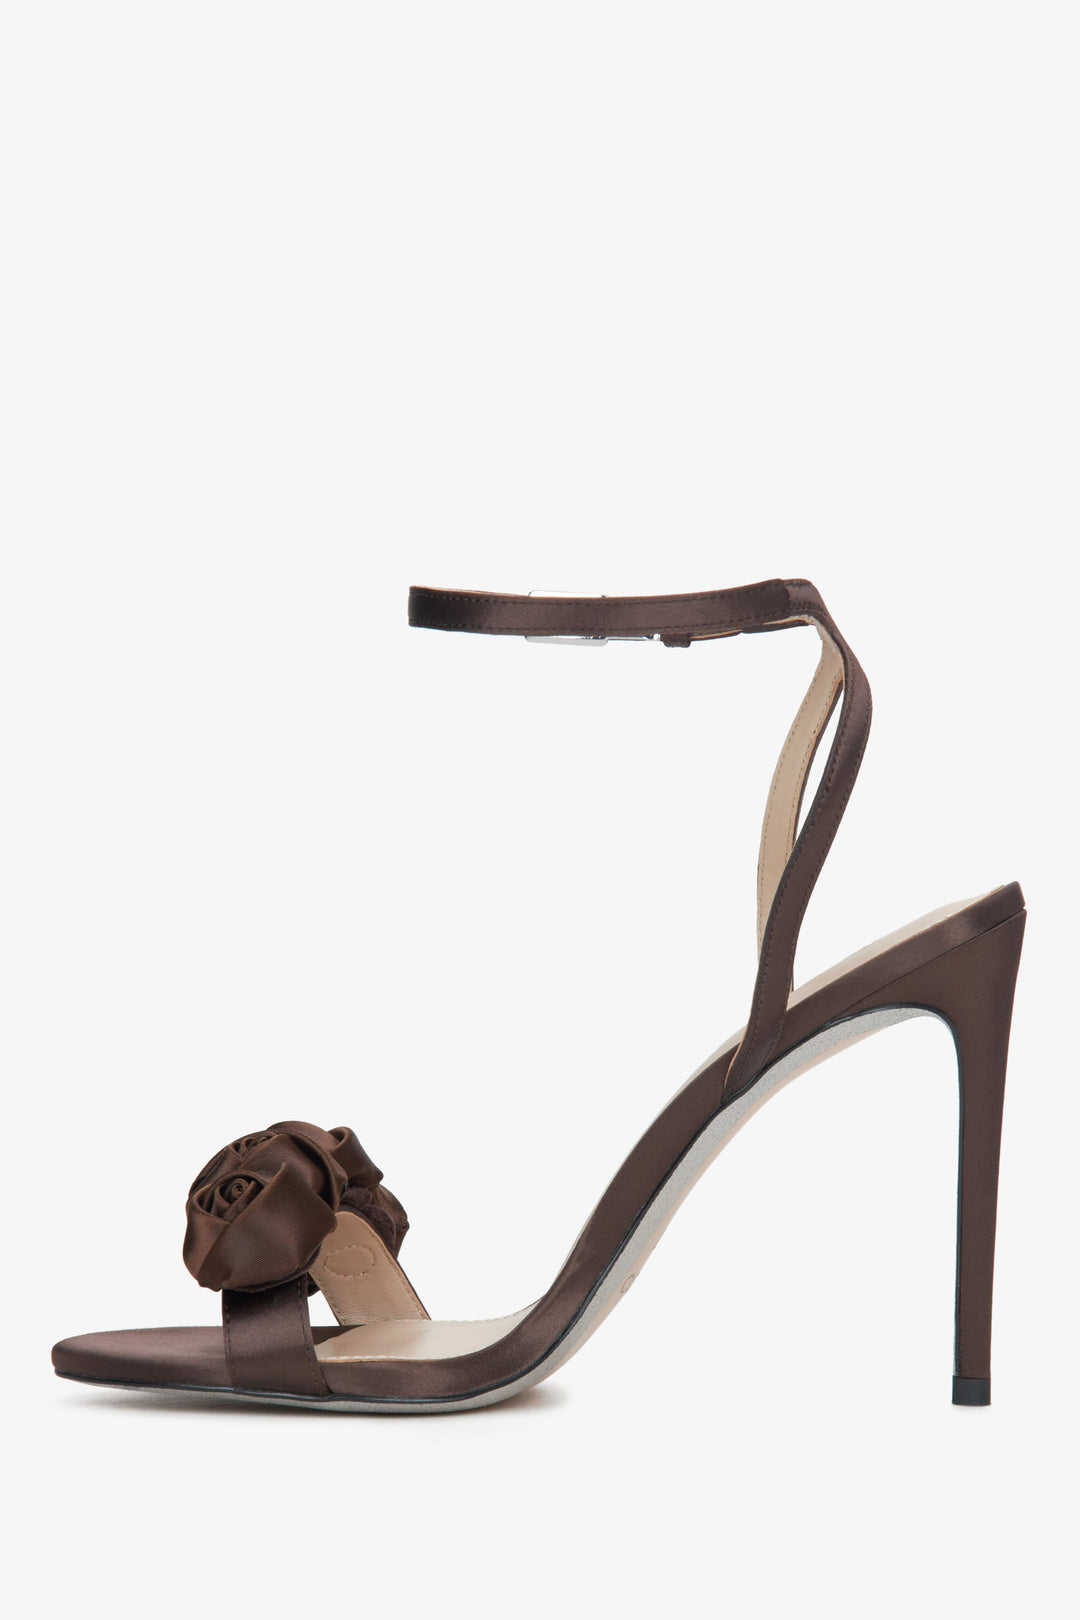 Estro women's dark brown high heel sandals - shoe profile.